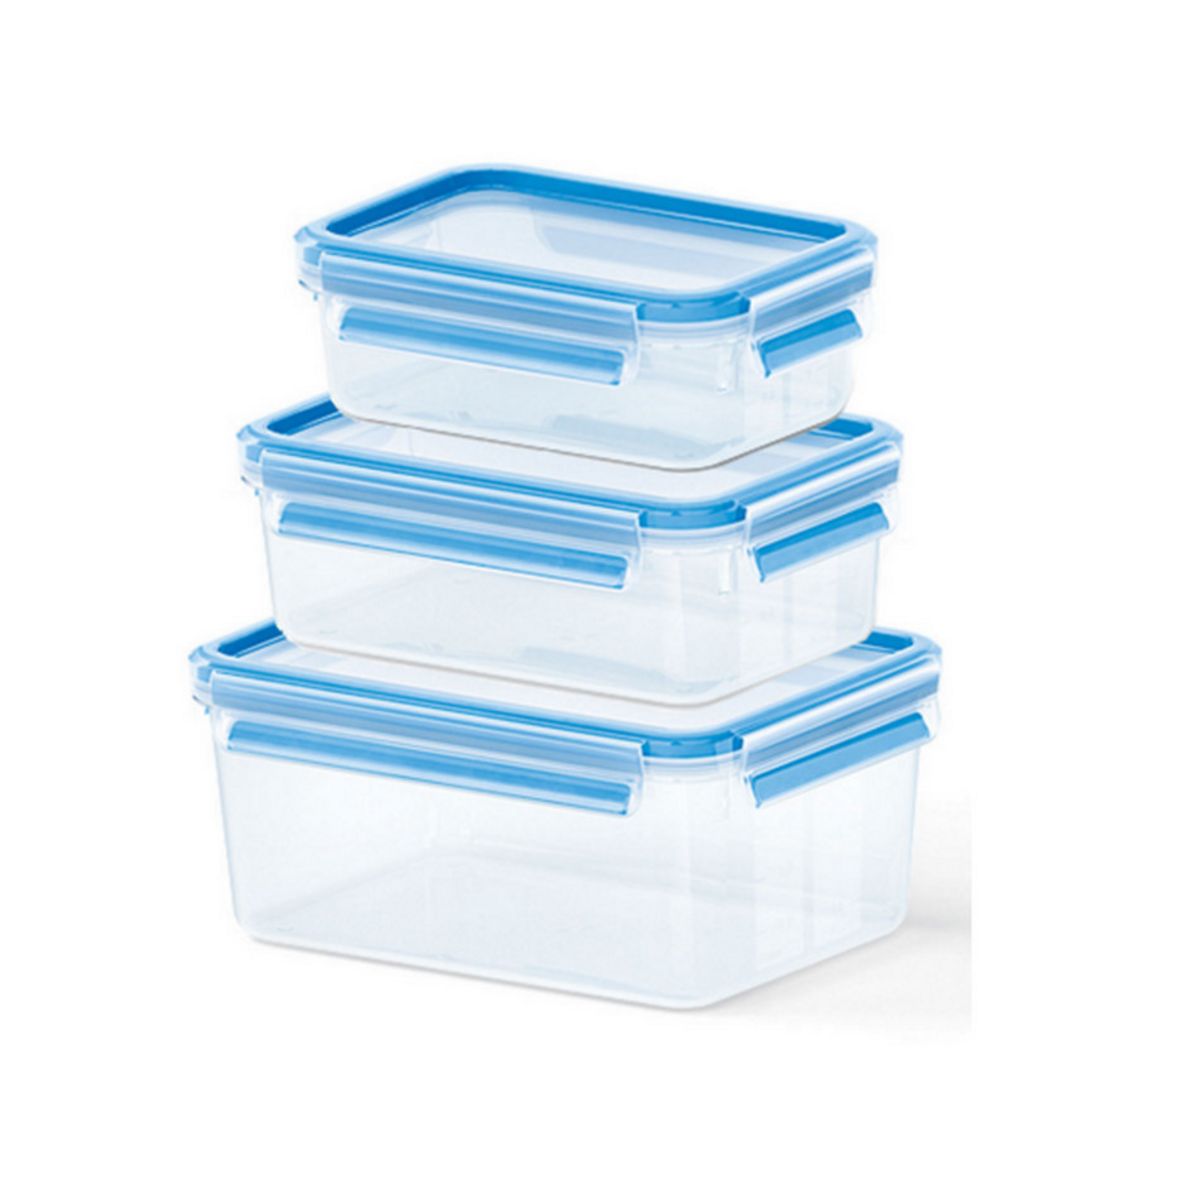 Club Cuisine boîtes pour charcuterie transparent bleu